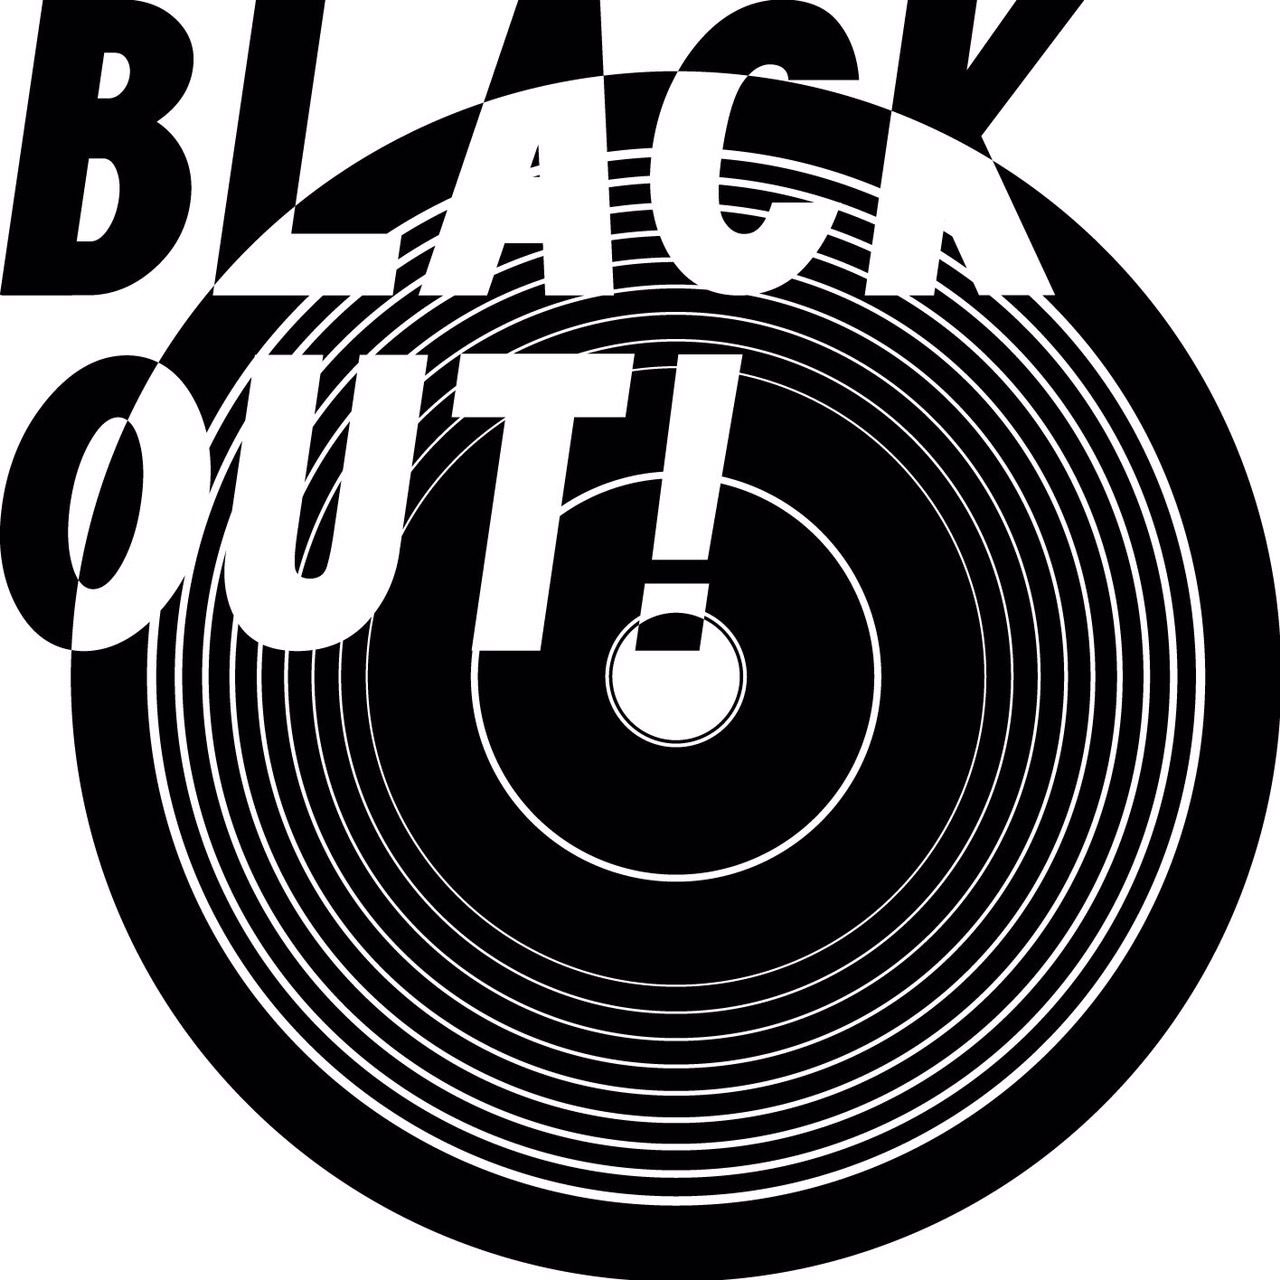 plugone production presents ”Blackout！”